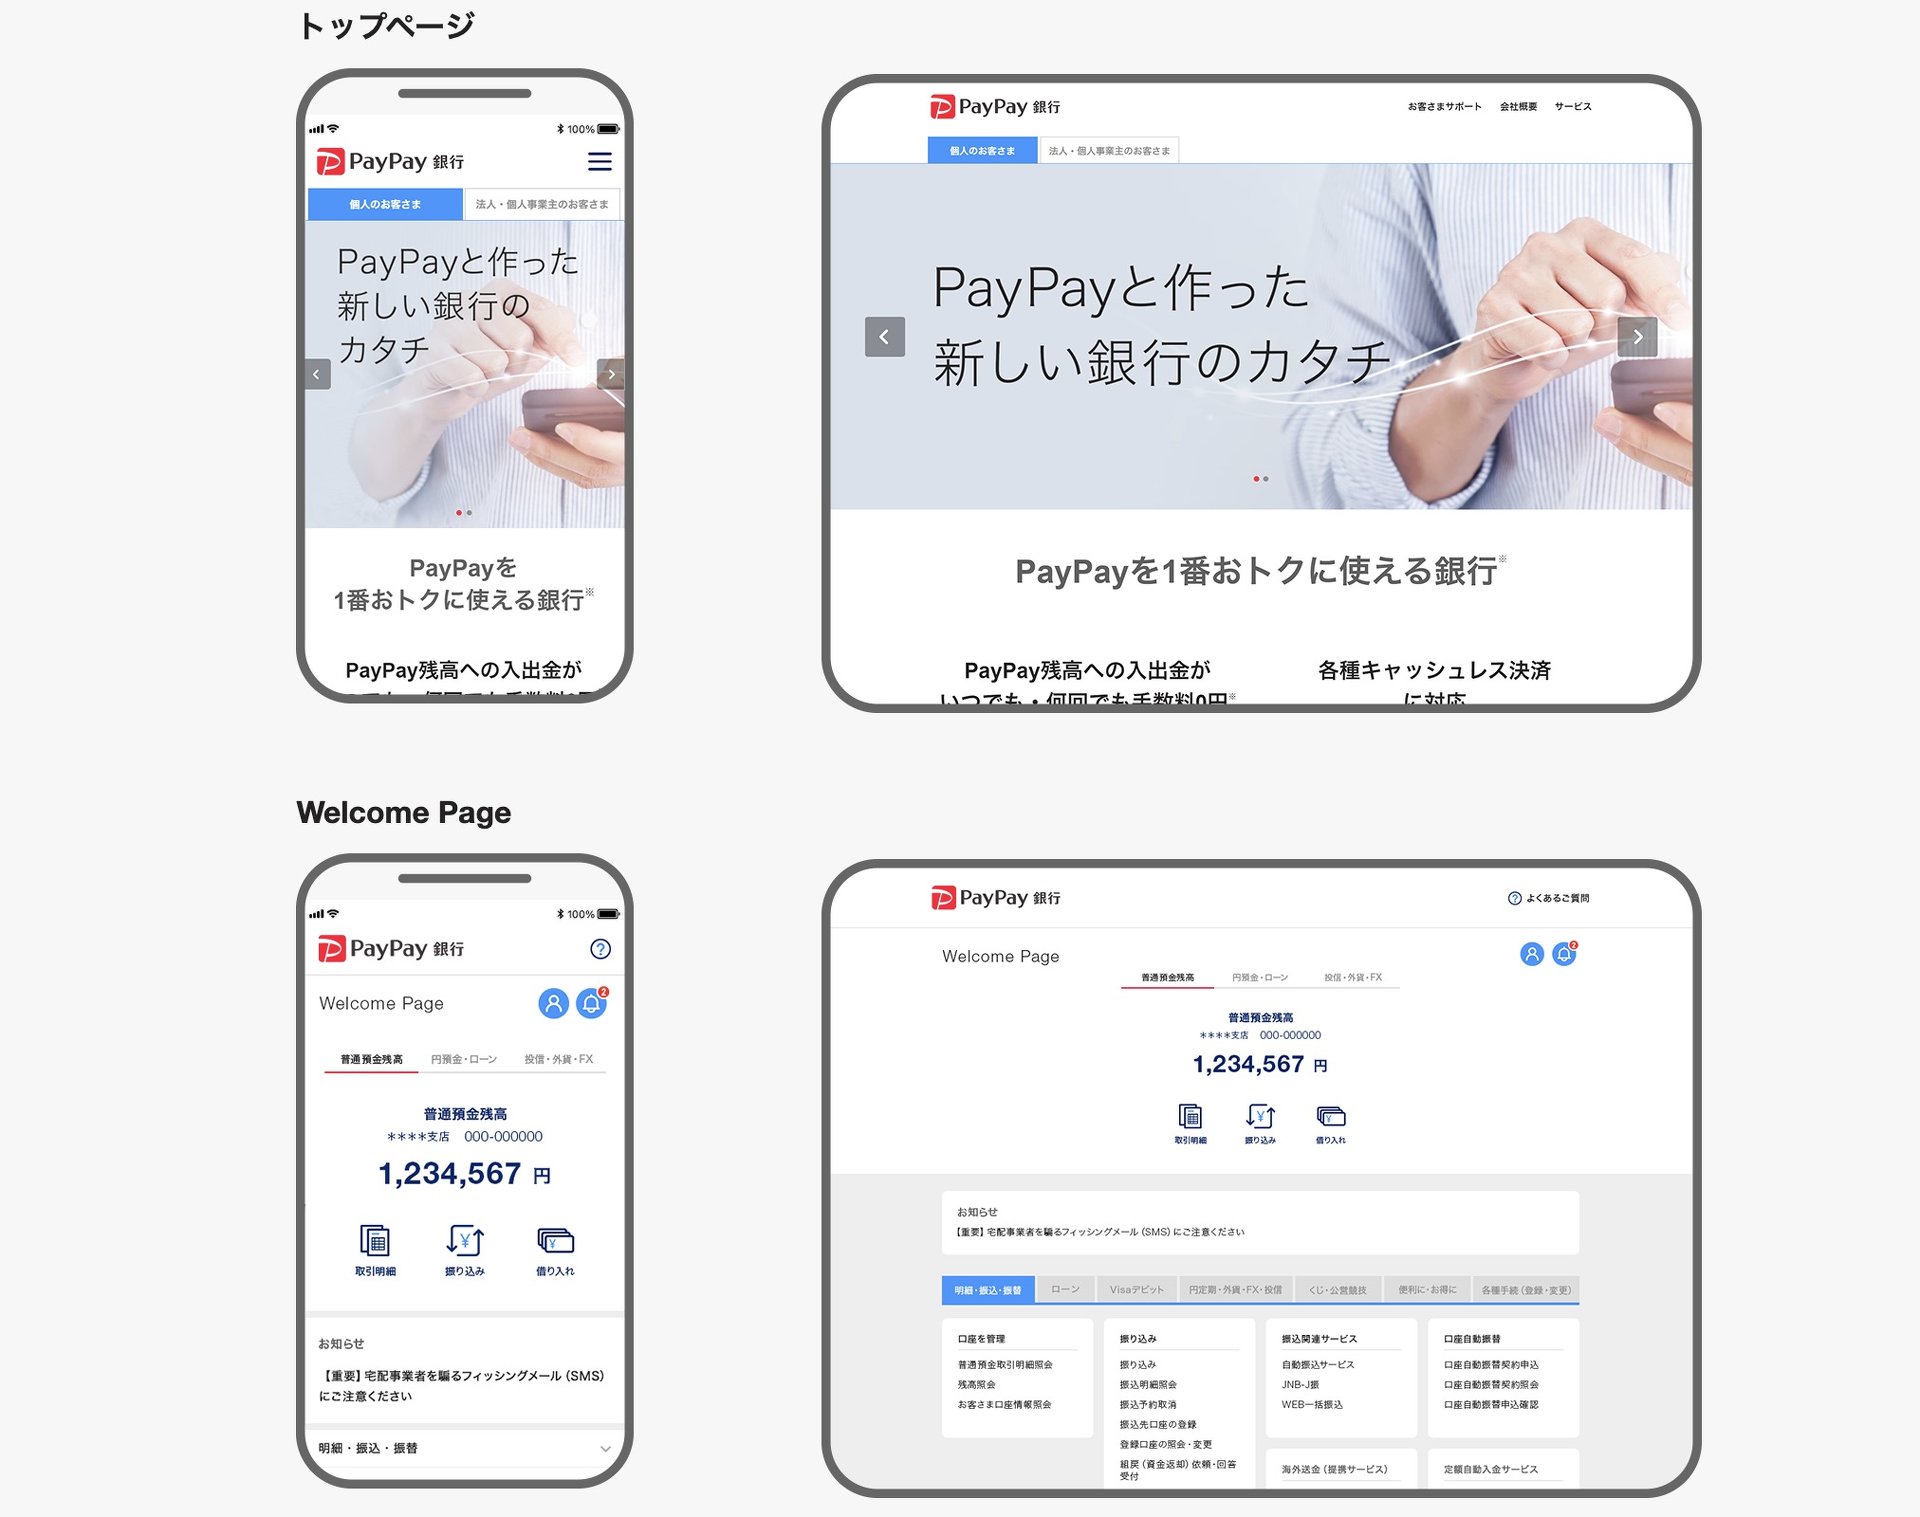 PayPay銀行スタート　アプリATMにも対応で「スマホで日本一使われる銀行目指す」